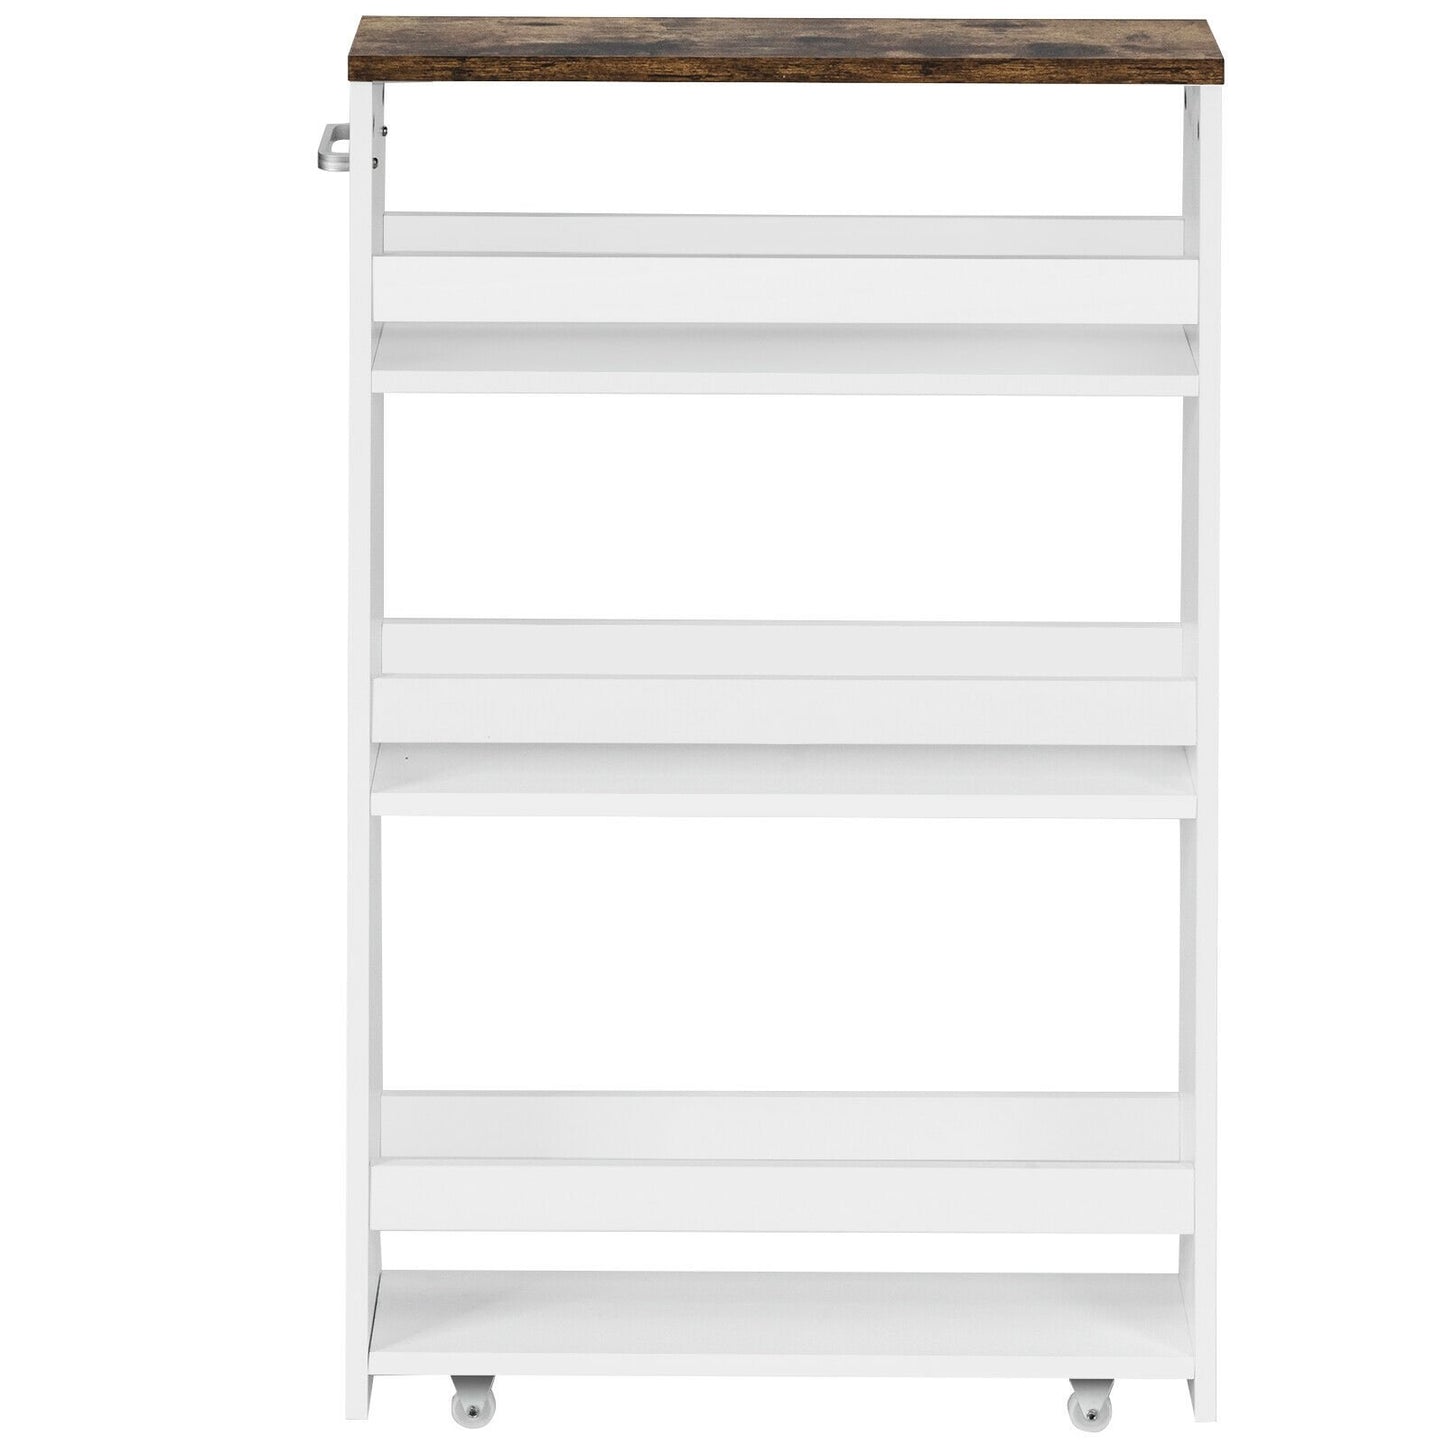 4 Tiers Rolling Slim Storage Kitchen Organizer Cart with Handle, White